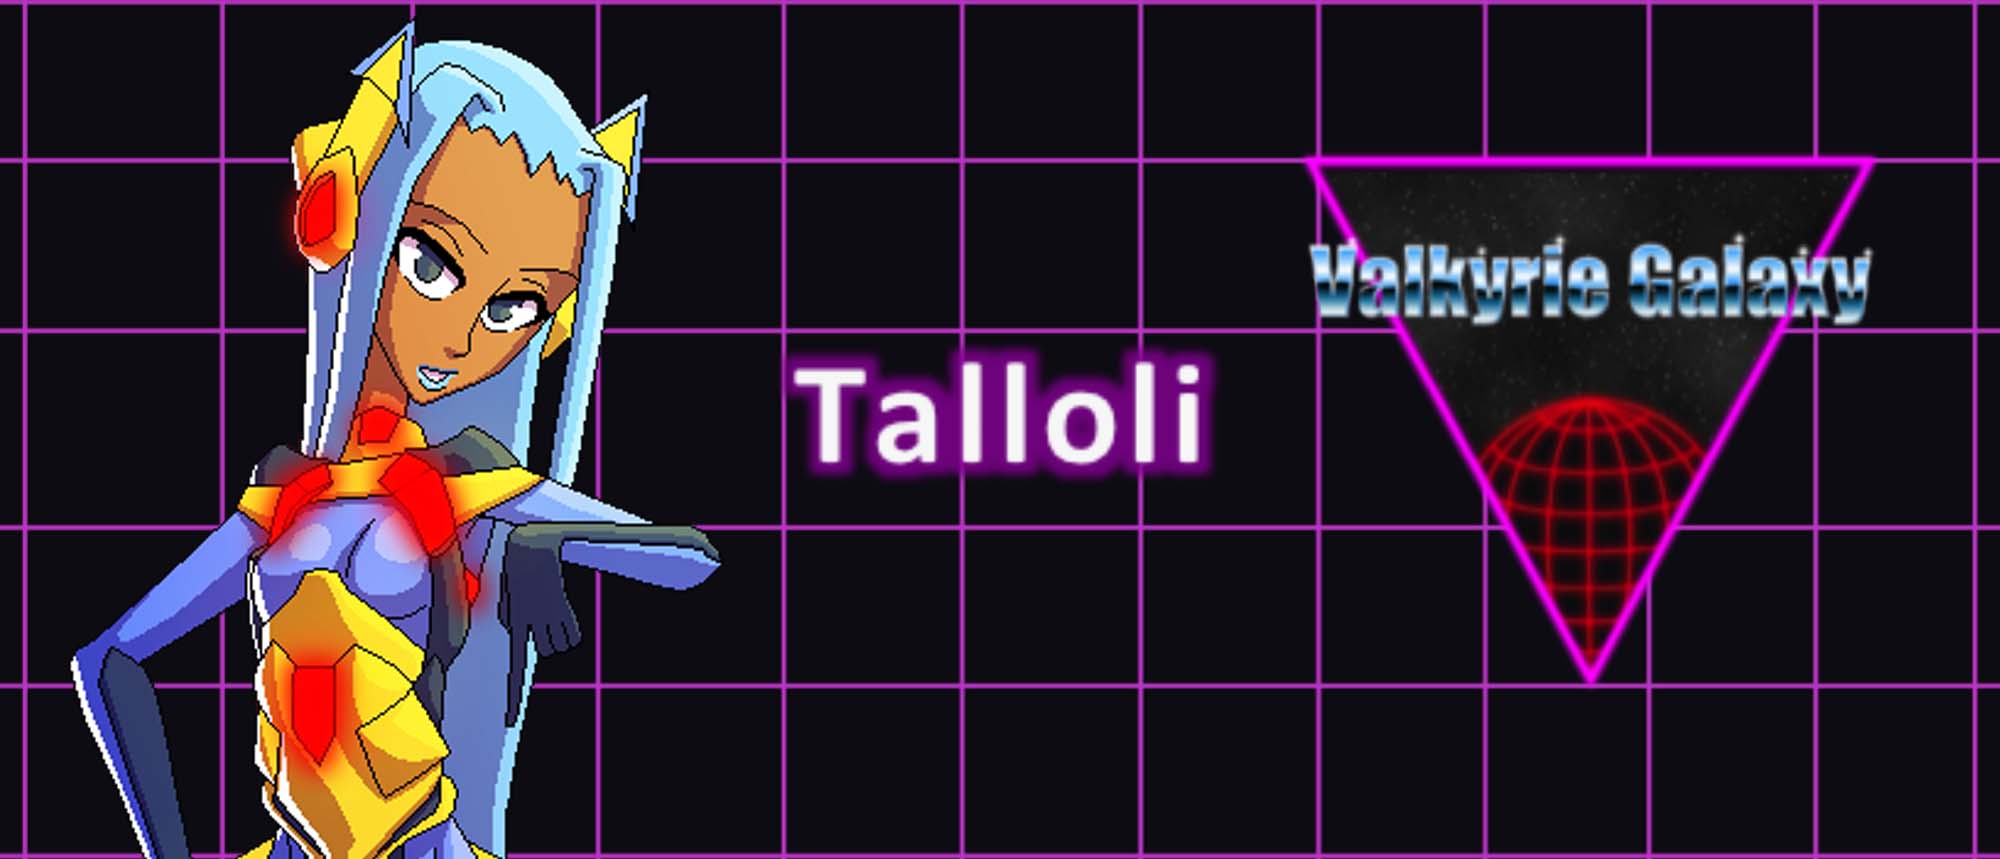 Talloli-closeup-valkyrie-galaxy